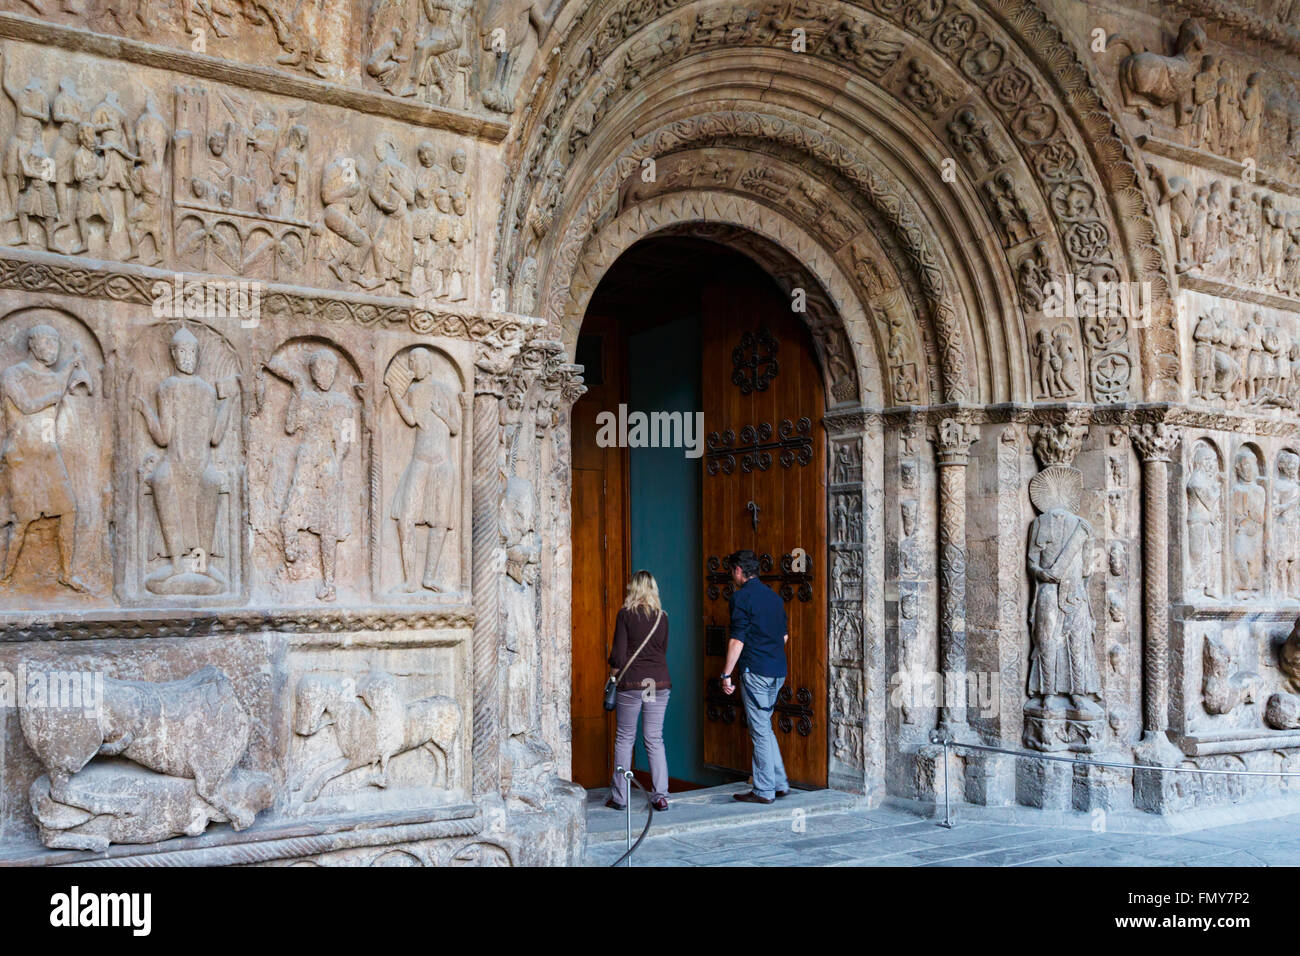 Ripoll, provincia de Girona, Cataluña, España. Monastir, o el monasterio de Santa María. El portal románico. Biblia en piedra. Foto de stock